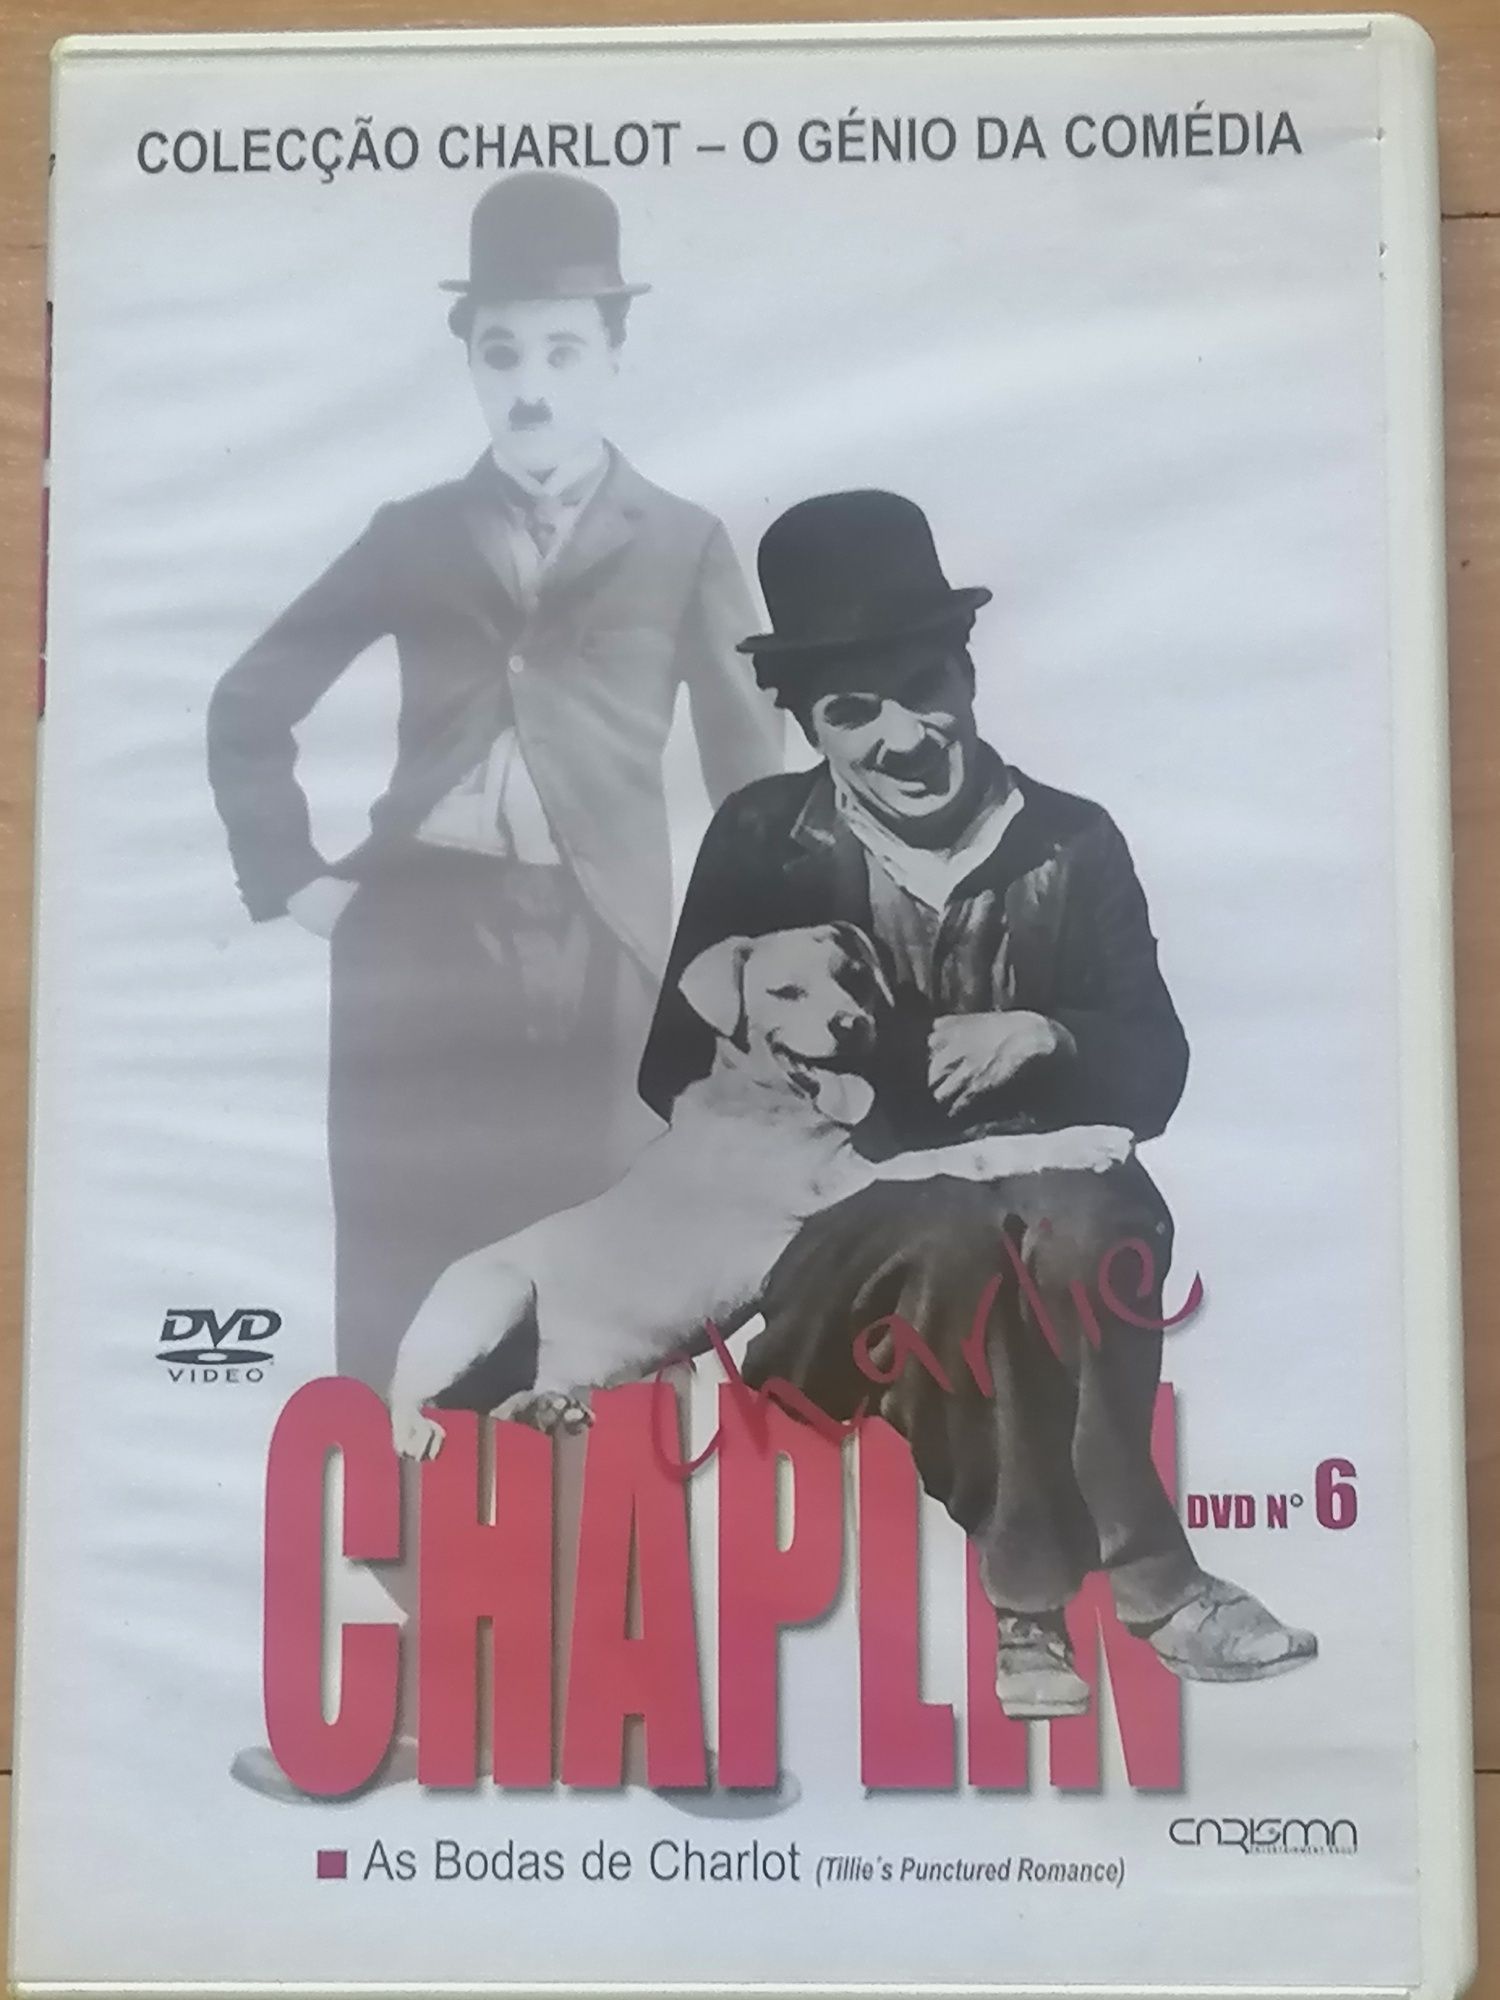 DVD de Charlie Chaplin usado em bom estado